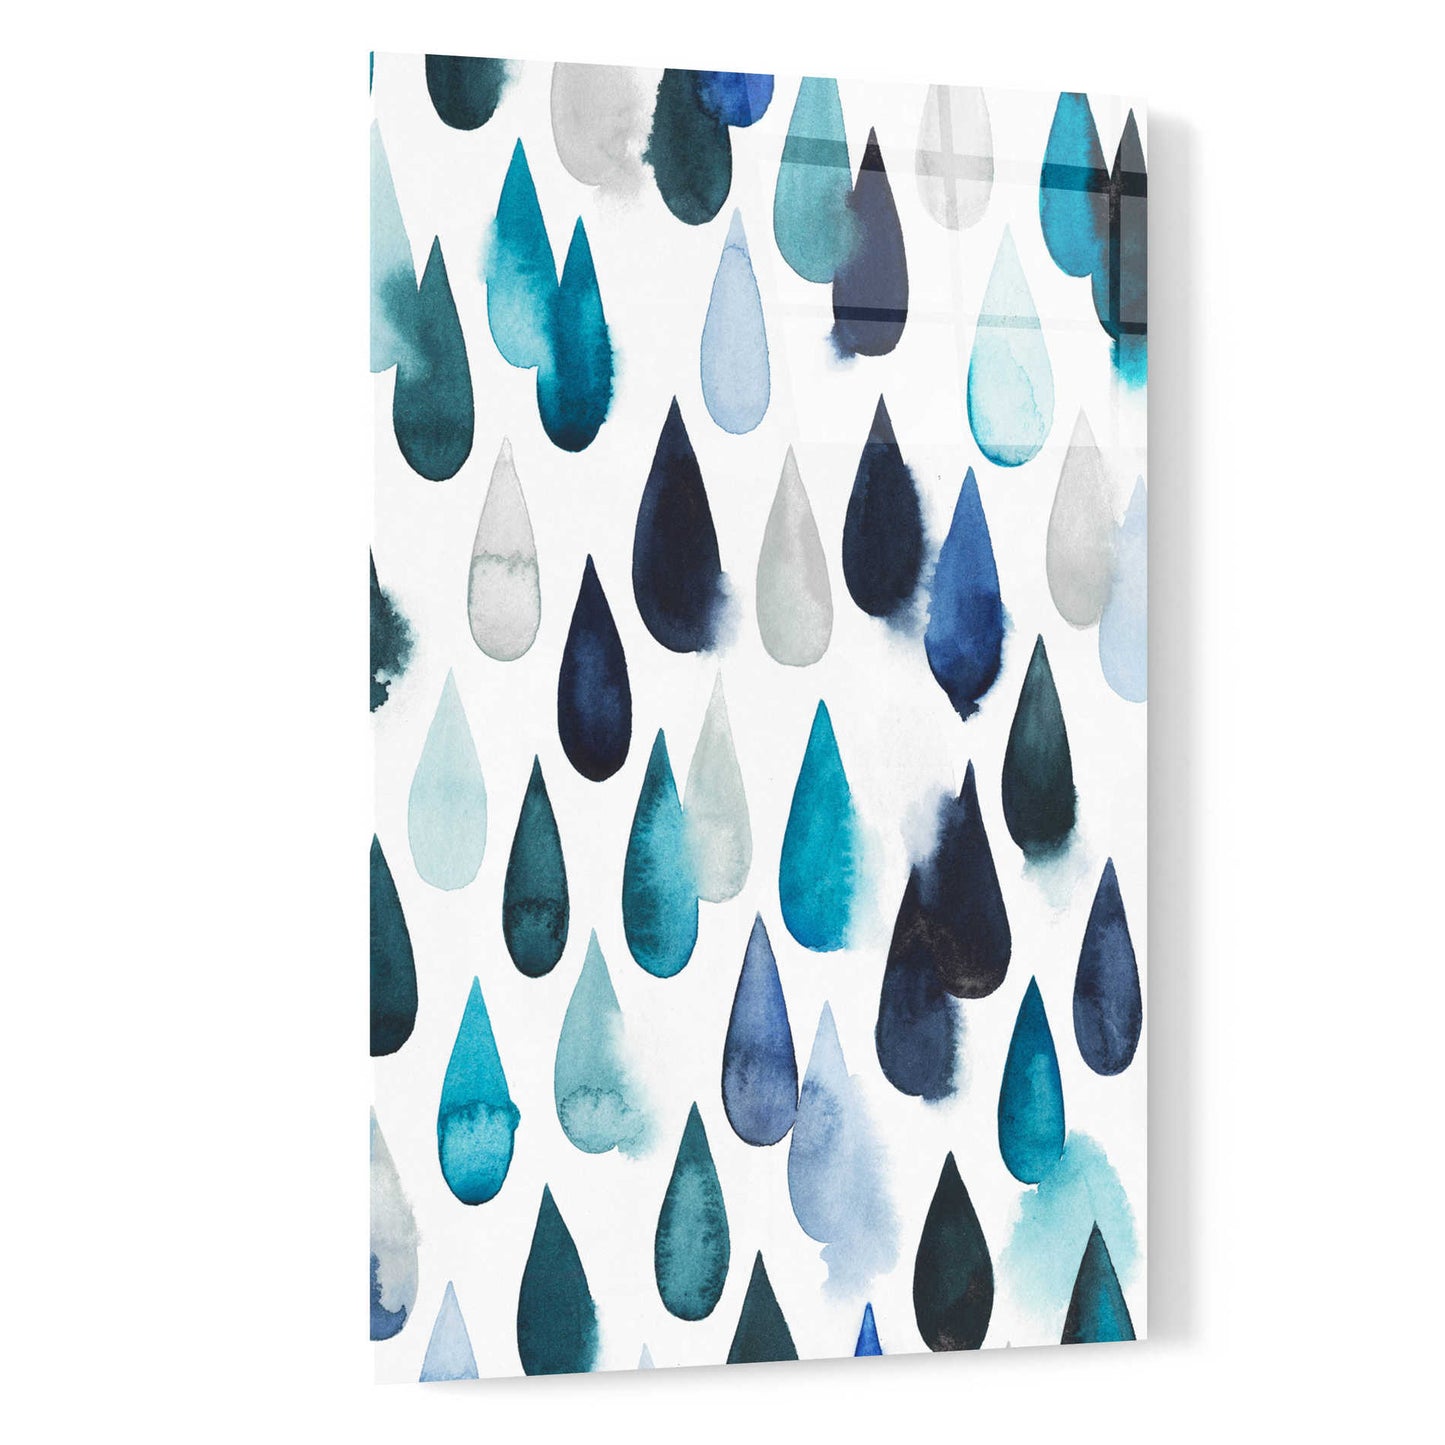 Epic Art 'Water Drops II' by Grace Popp, Acrylic Glass Wall Art,16x24